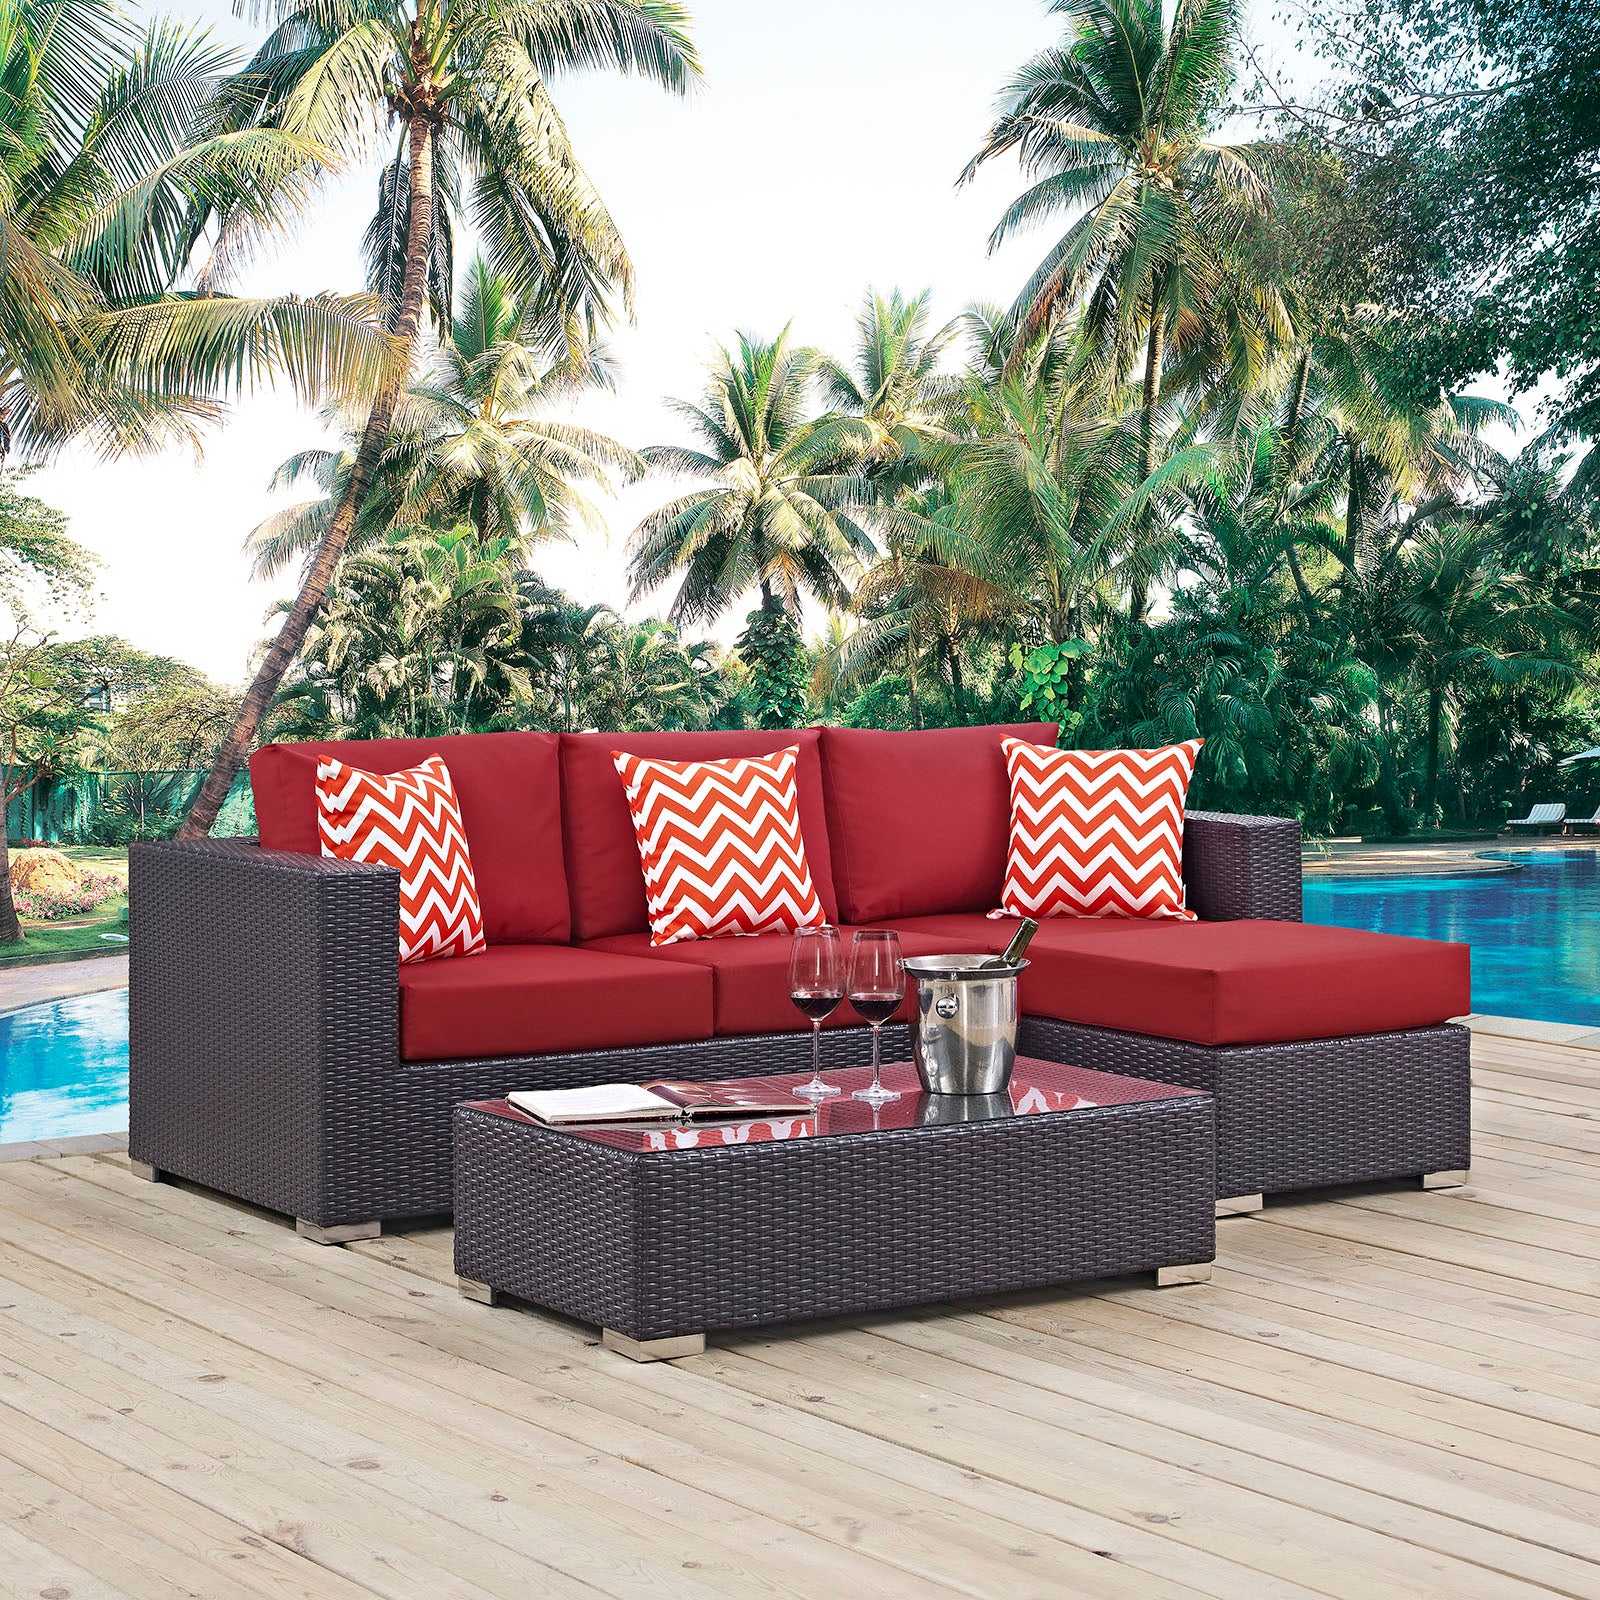 Modway Outdoor Conversation Sets - Convene 3 Piece Outdoor Patio Sofa Set Espresso & Red